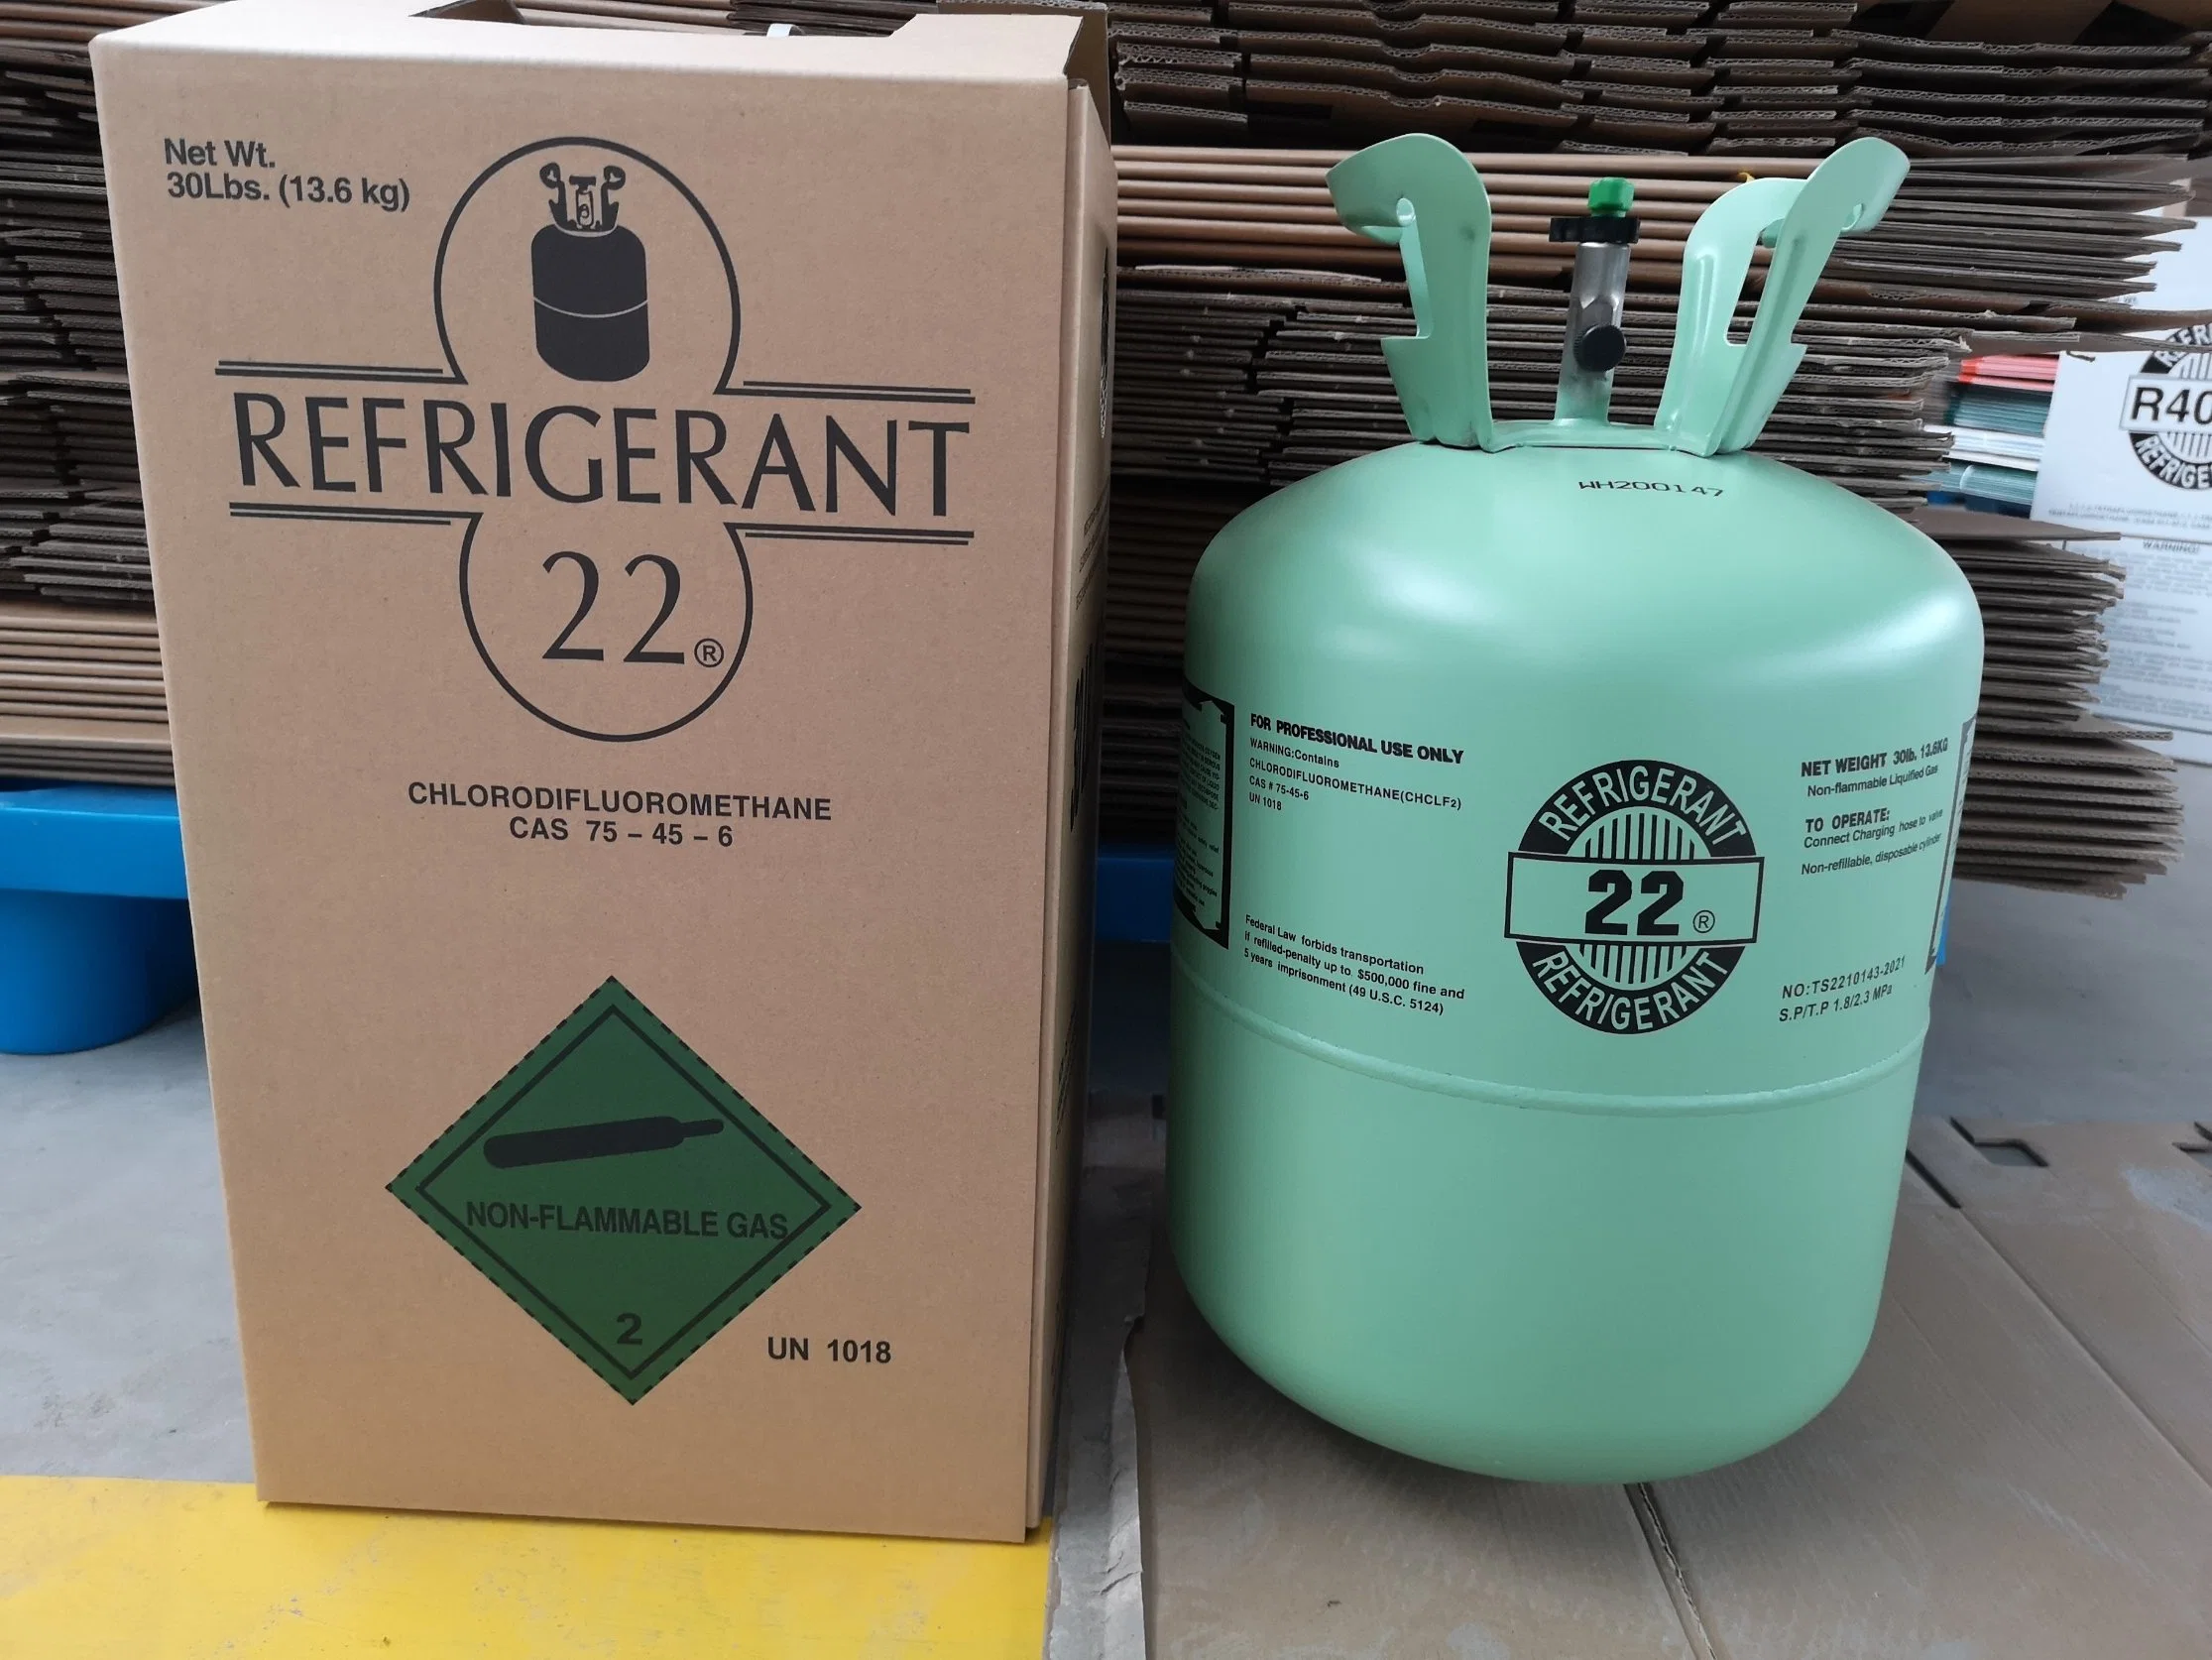 Non-Flammable Gas refrigerante 410A/R-410/R410A gas para AC